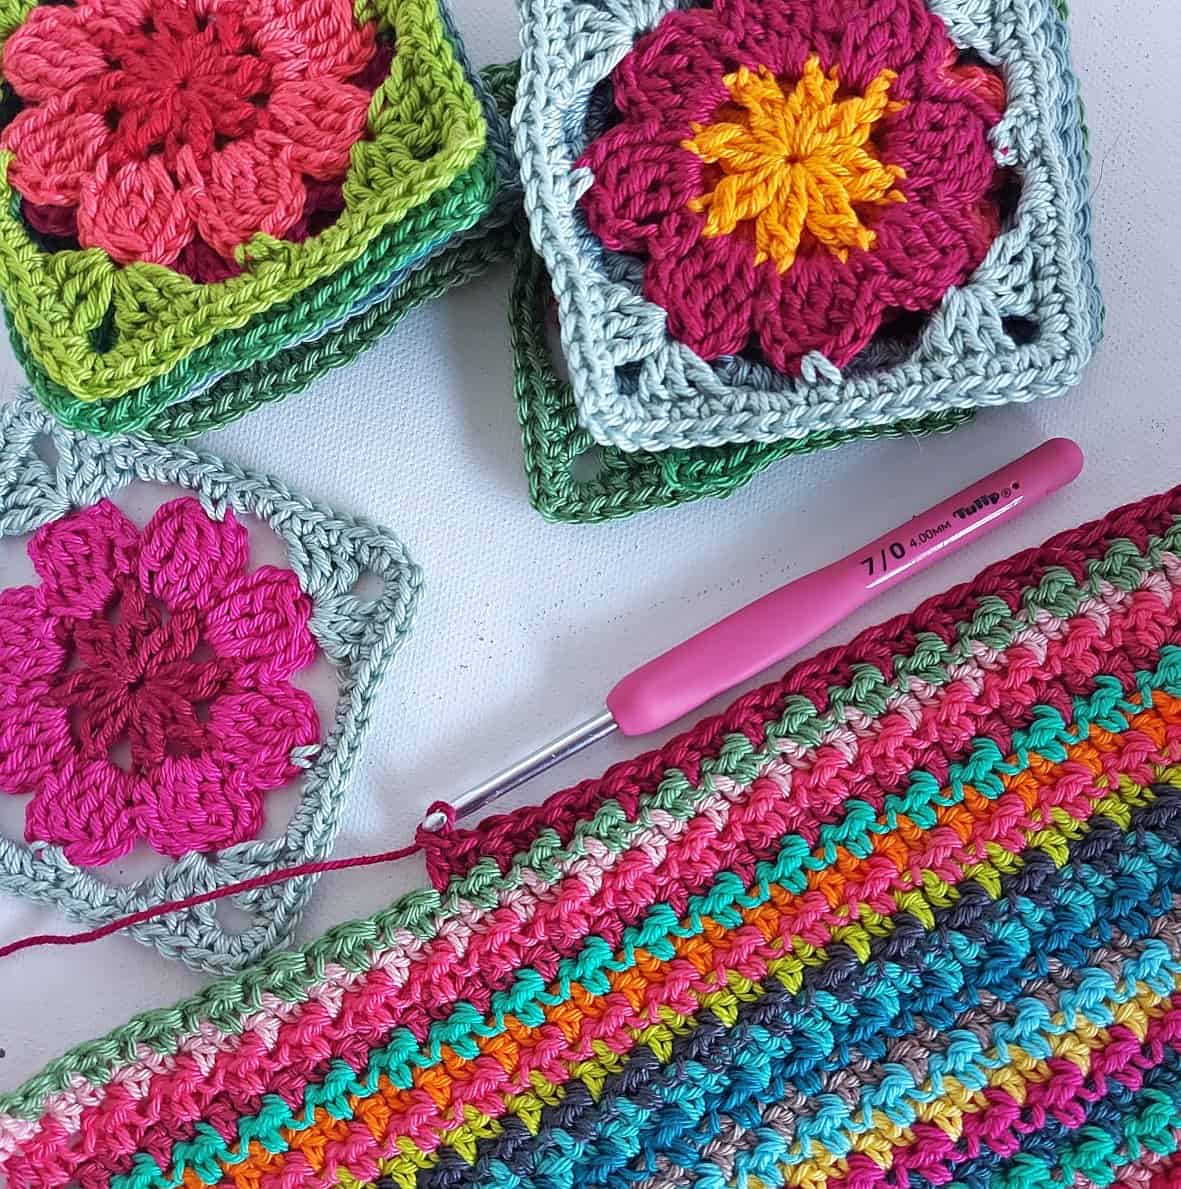 Scrap Busting Blankets in Cotton Yarn - Annie Design Crochet